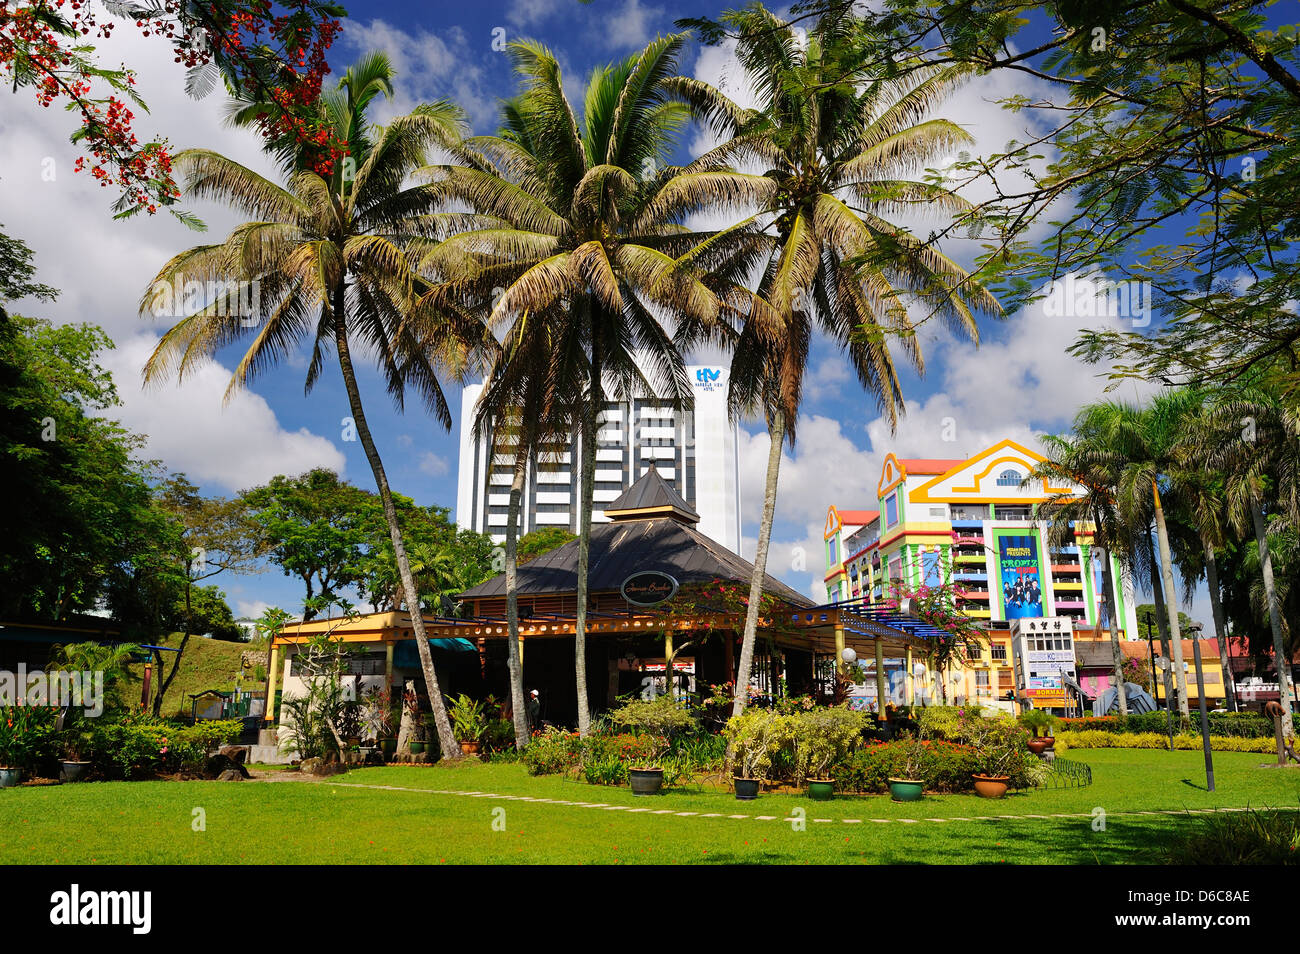 Waterfront bar and restaurant in Kuching, Sarawak, Borneo Stock Photo